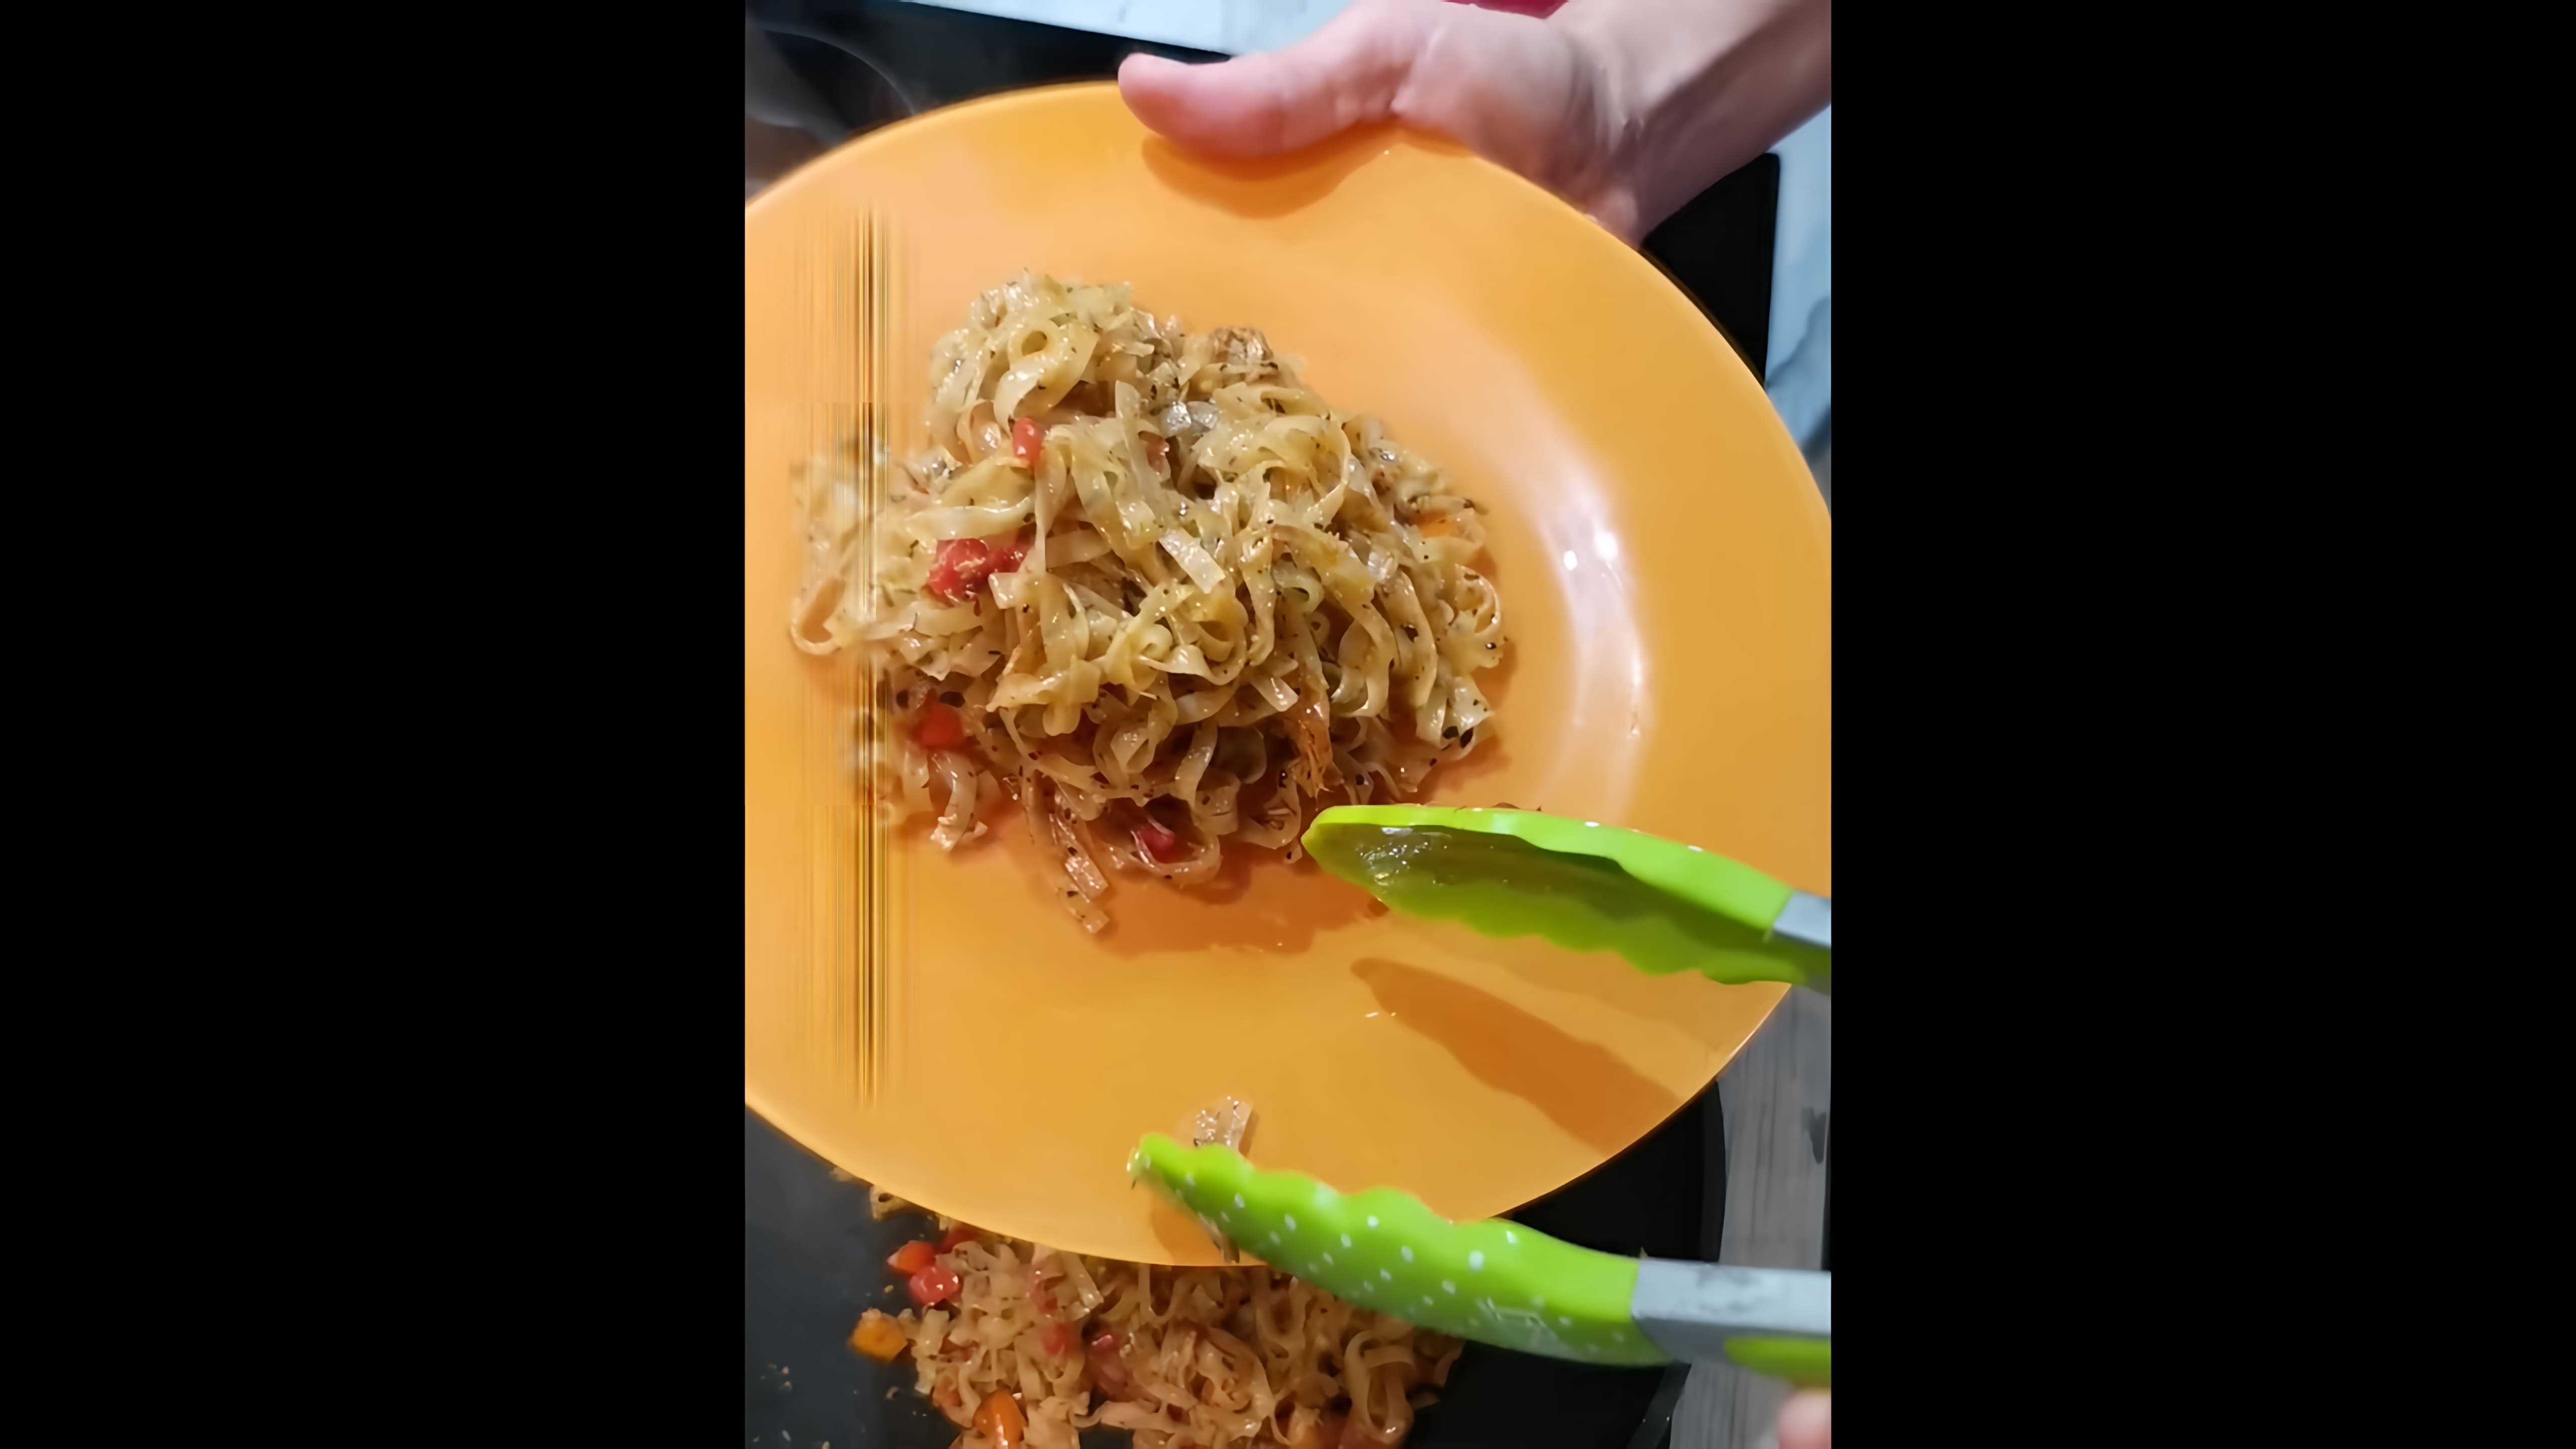 В этом видео демонстрируется процесс приготовления азиатского блюда - рисовой лапши с тунцом и овощами